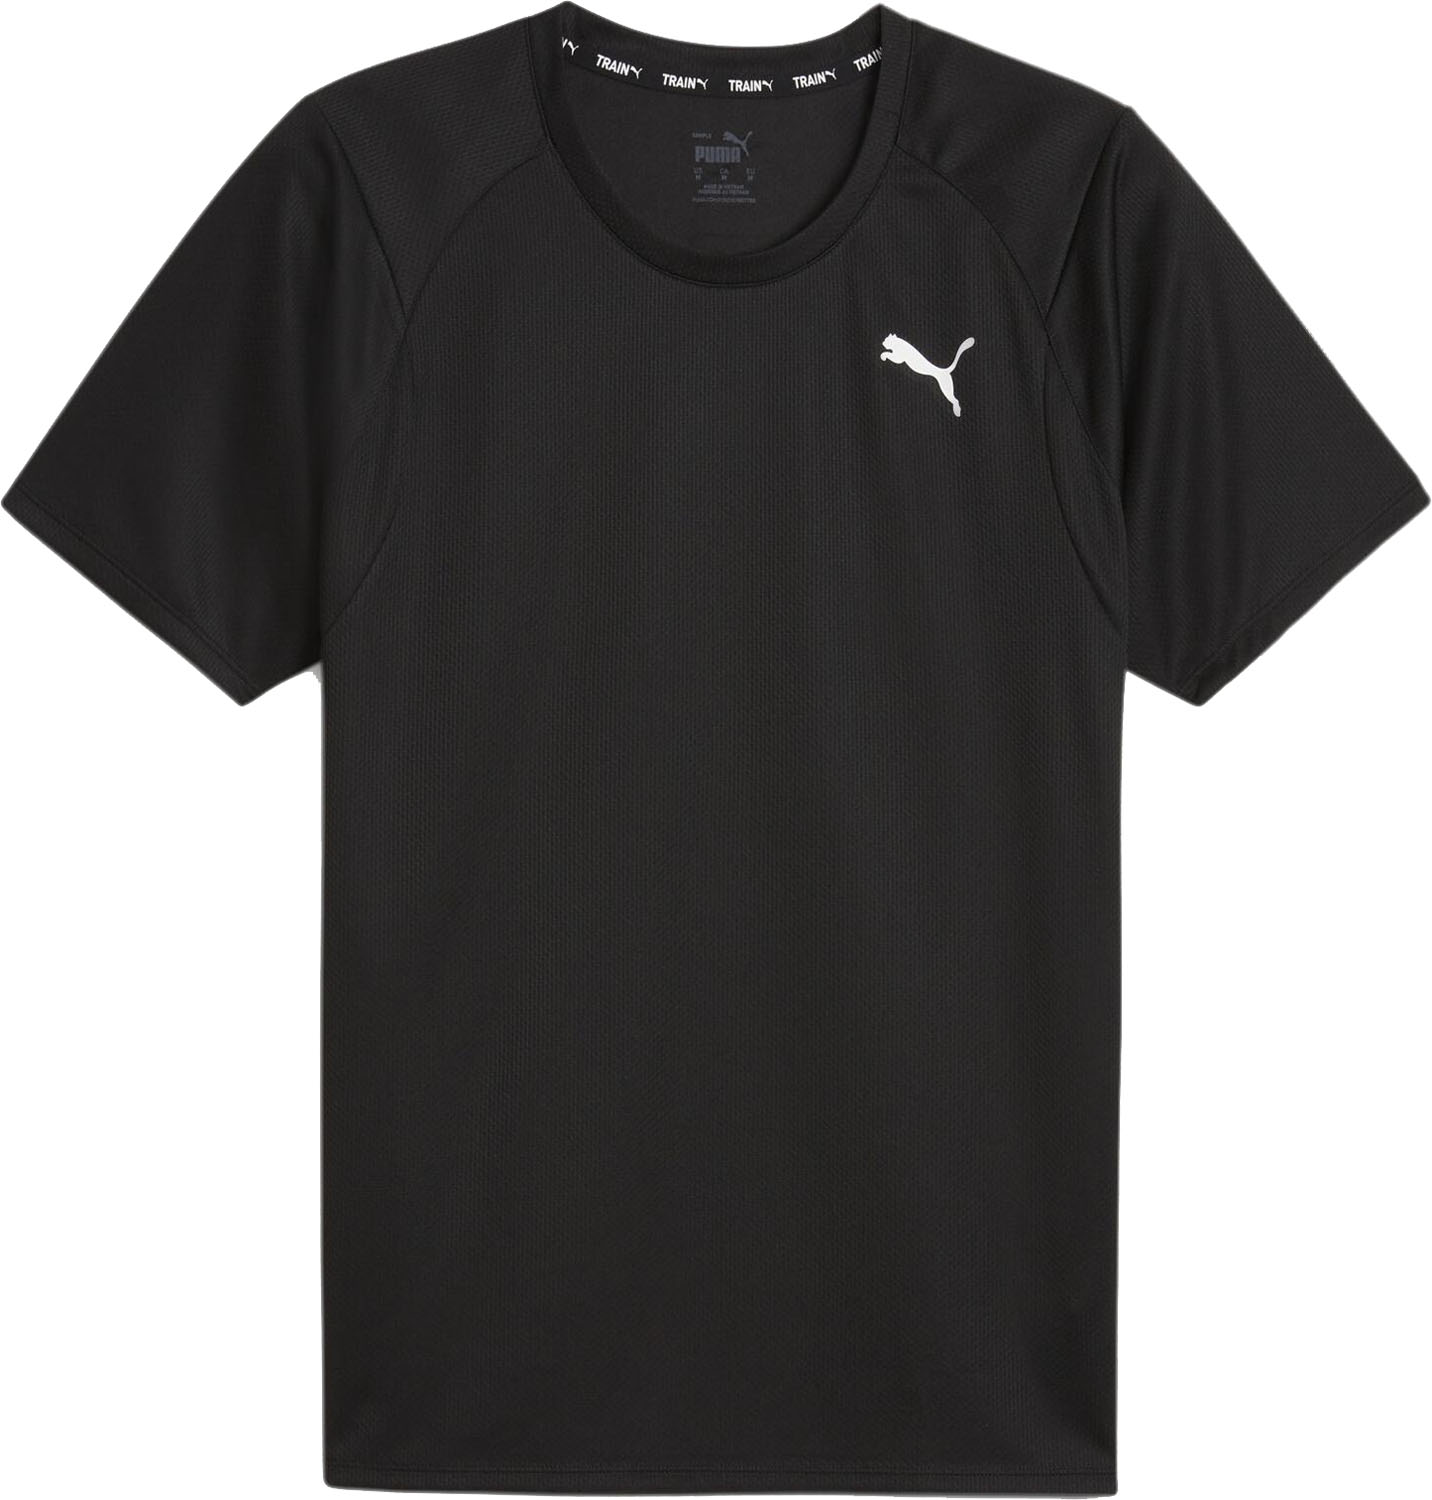  PUMA プーマ フィット フル ウルトラブレス FIT FULL ULTRABREATHE SS Tシャツ メンズ Tシャツ 半袖 ワンポイント ランニング トレーニング 525540